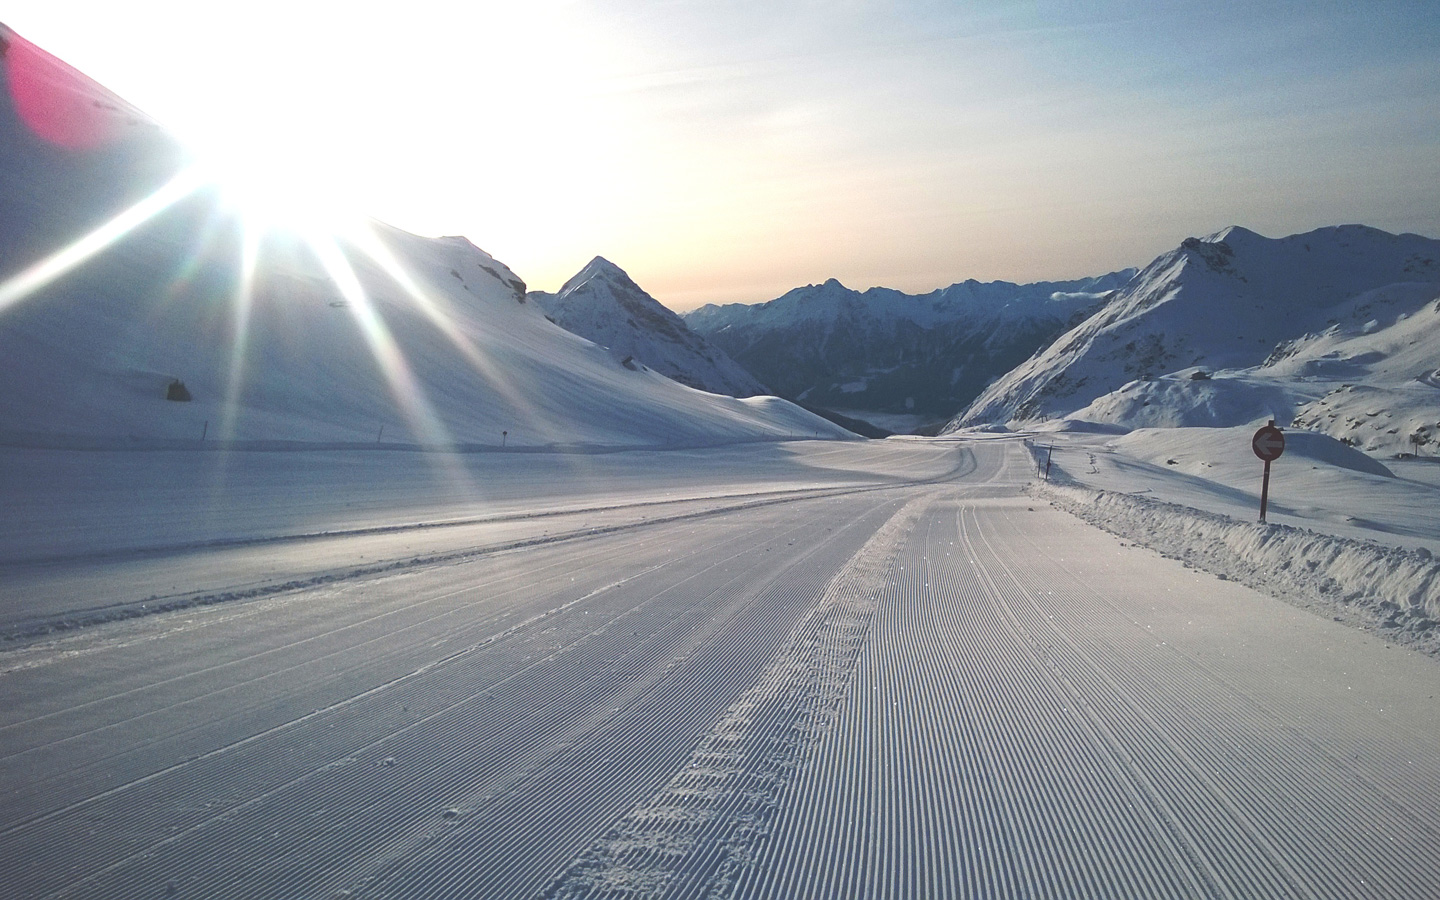 Puren Ski-Spaß am Mölltaler Gletscher in Kärnten erleben.